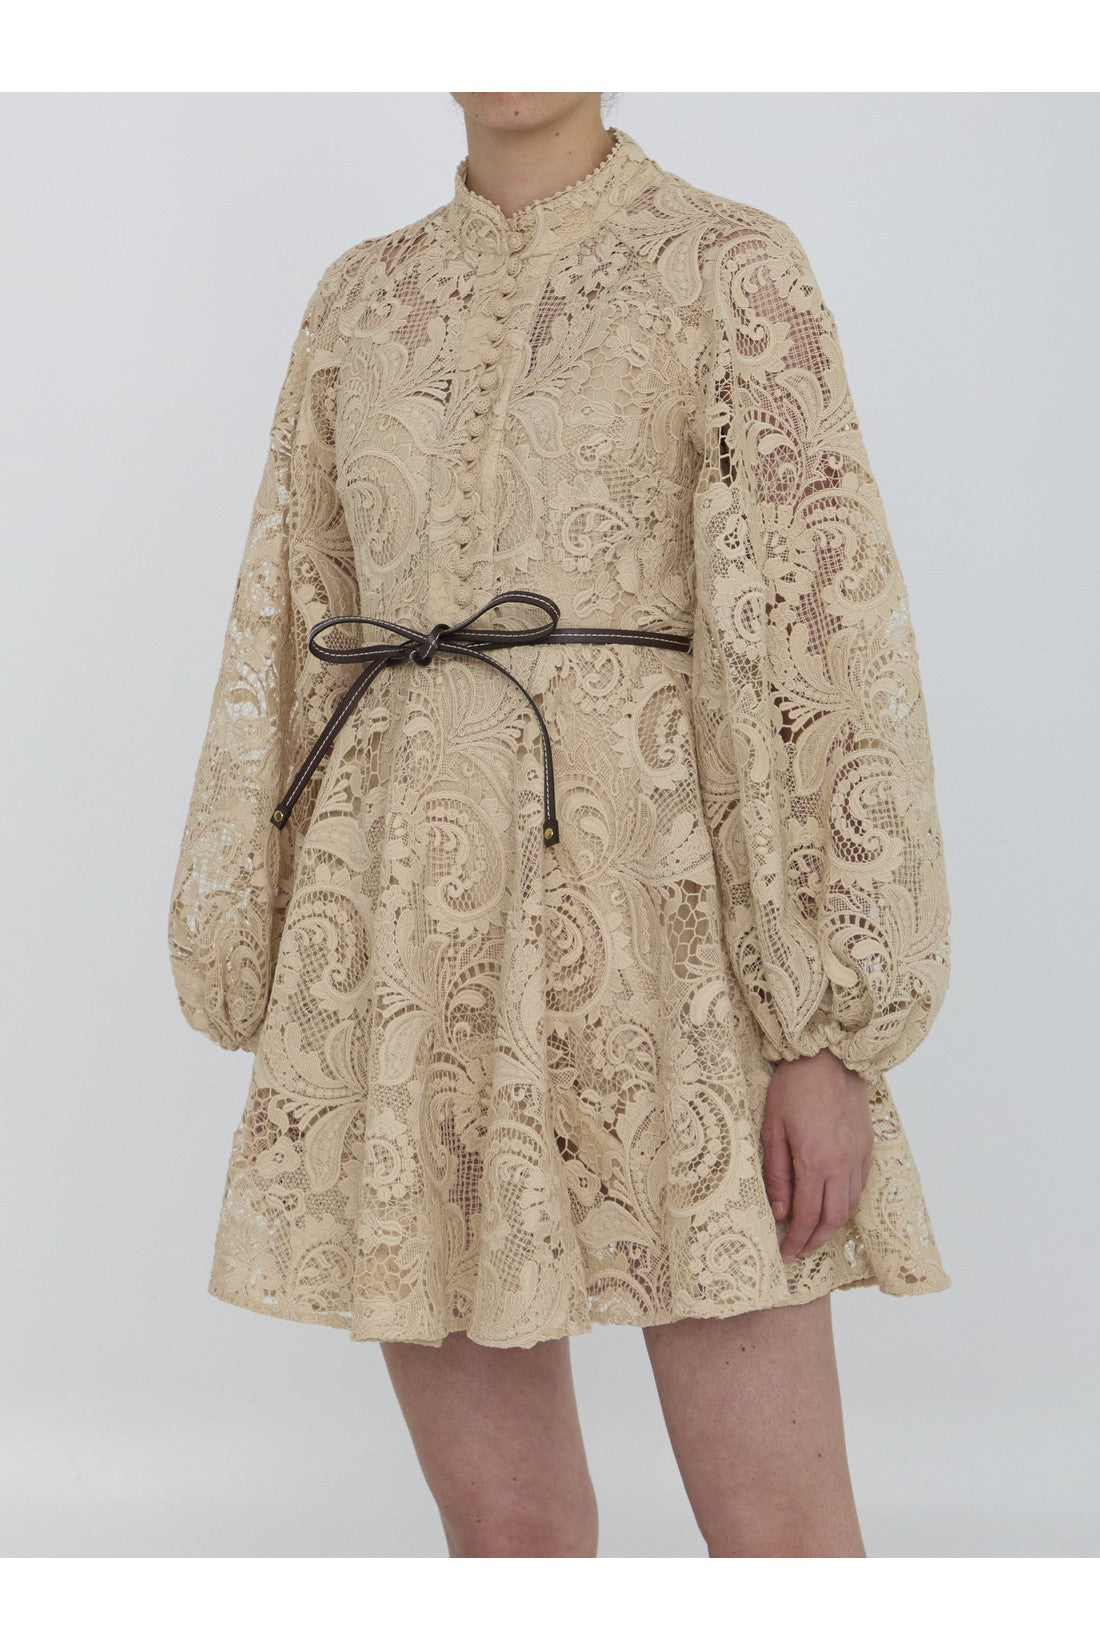 Waverly Lace mini dress